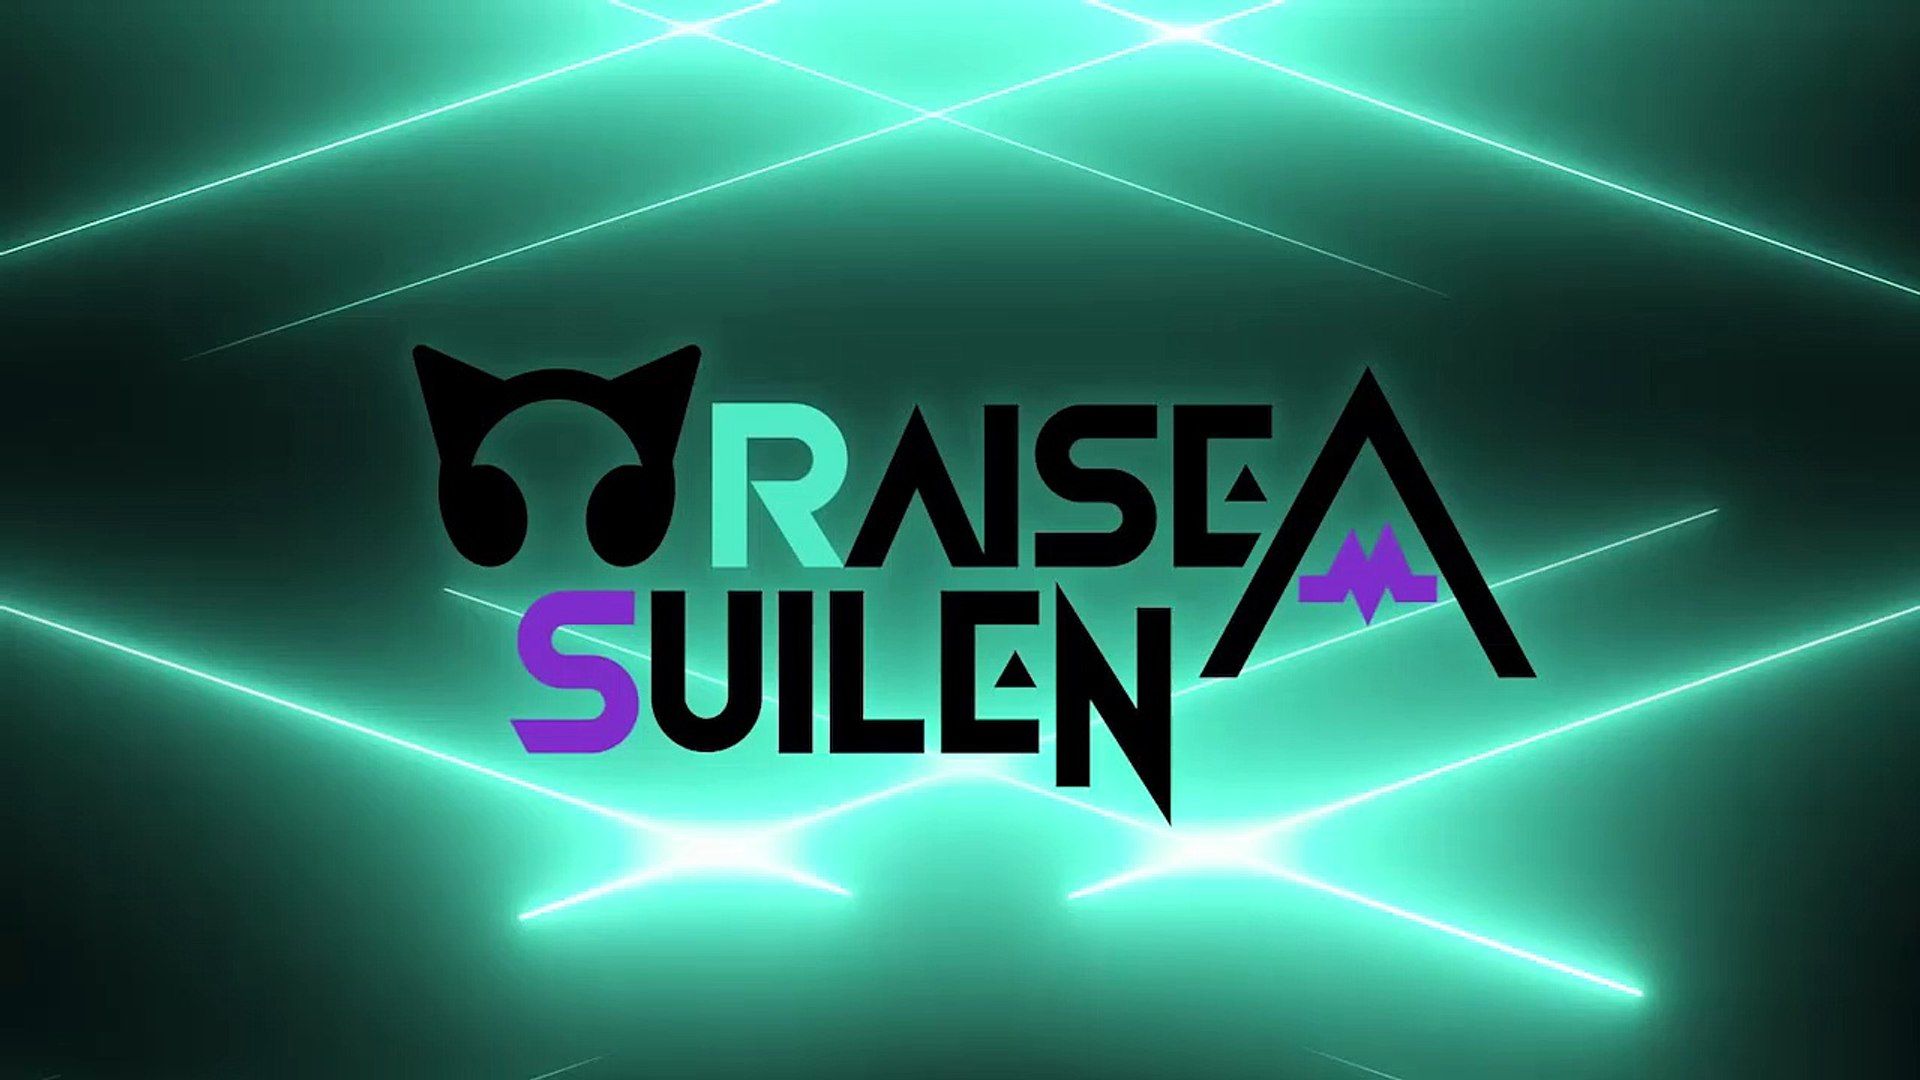 Bang a1. Raise a Suilen. Raise a Suilen логотип. Raise a Suilen обои. R.I.O.T raise a Suilen.